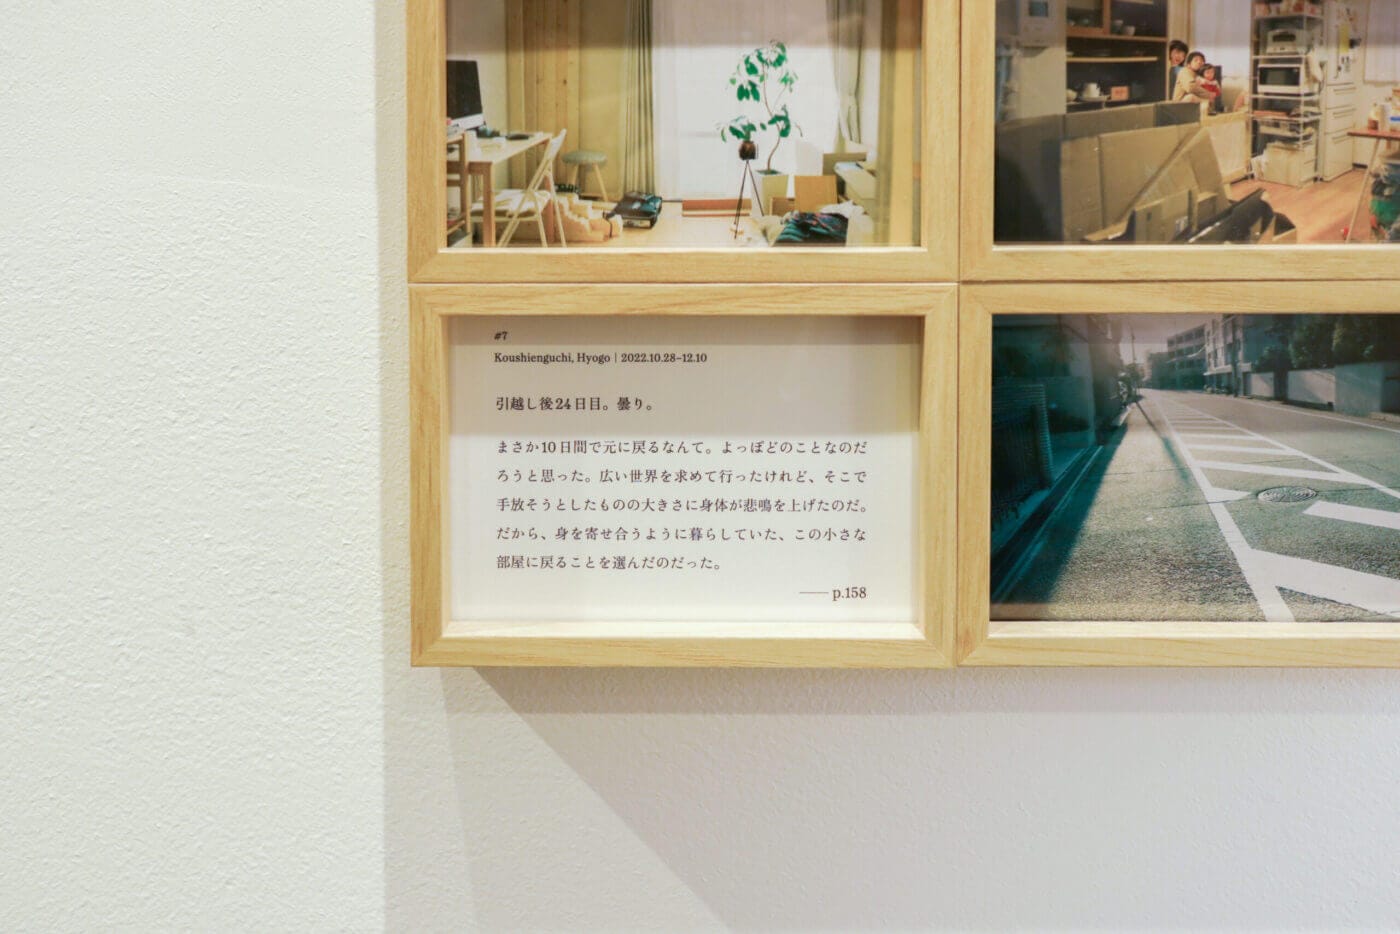 REPORT｜moving days Ai Hirano Photo Exhibition